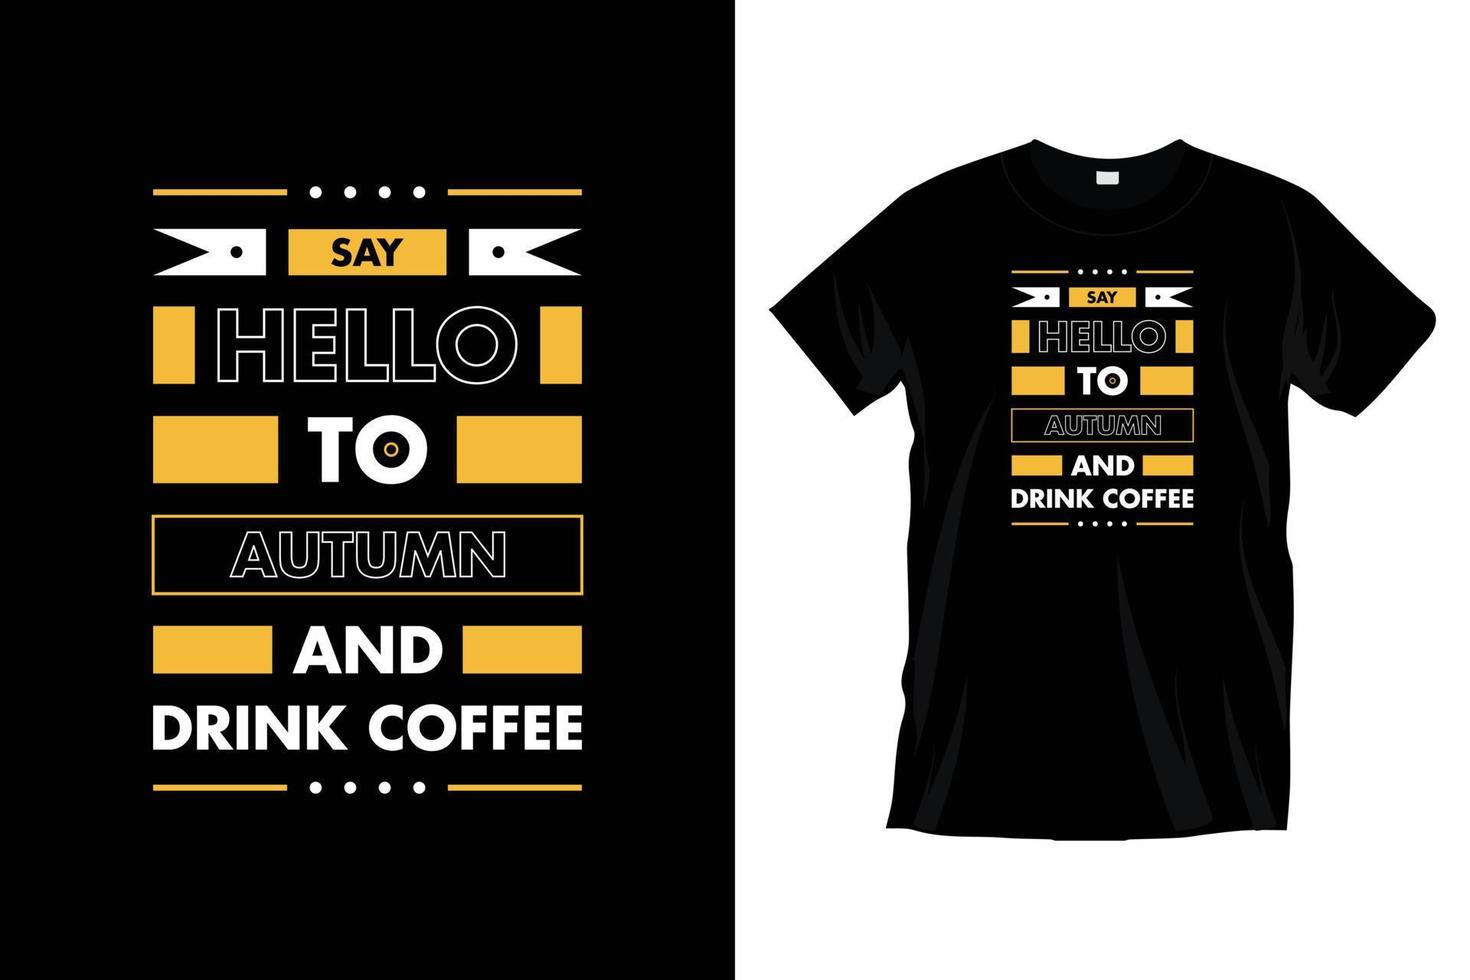 säga Hej till höst och dryck kaffe. modern motiverande kaffe typografi t skjorta design för grafik, kläder, vektor, konst, illustration, typografi, affisch, mall, trendig svart tee skjorta design. vektor